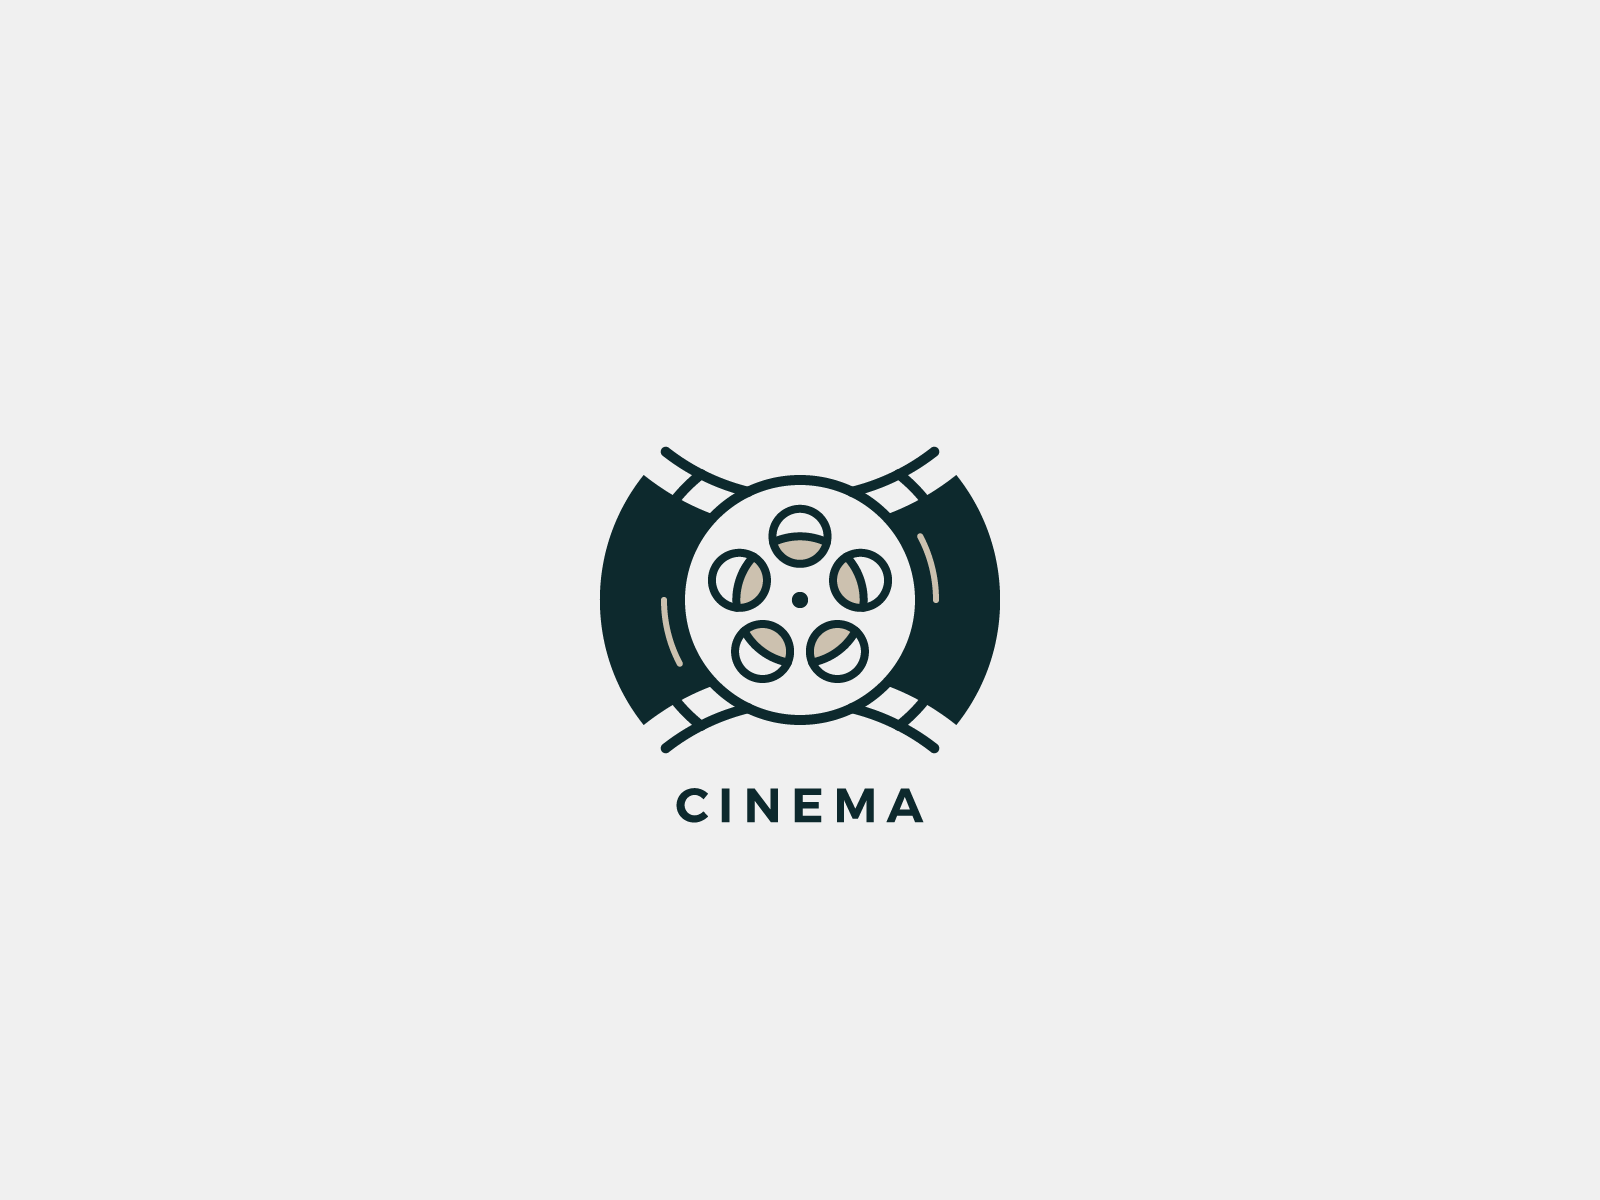 Логотип кинотеатра. Cinema логотип. Кинотеатр лого. Логотип для кинотеатра "Cinema place".